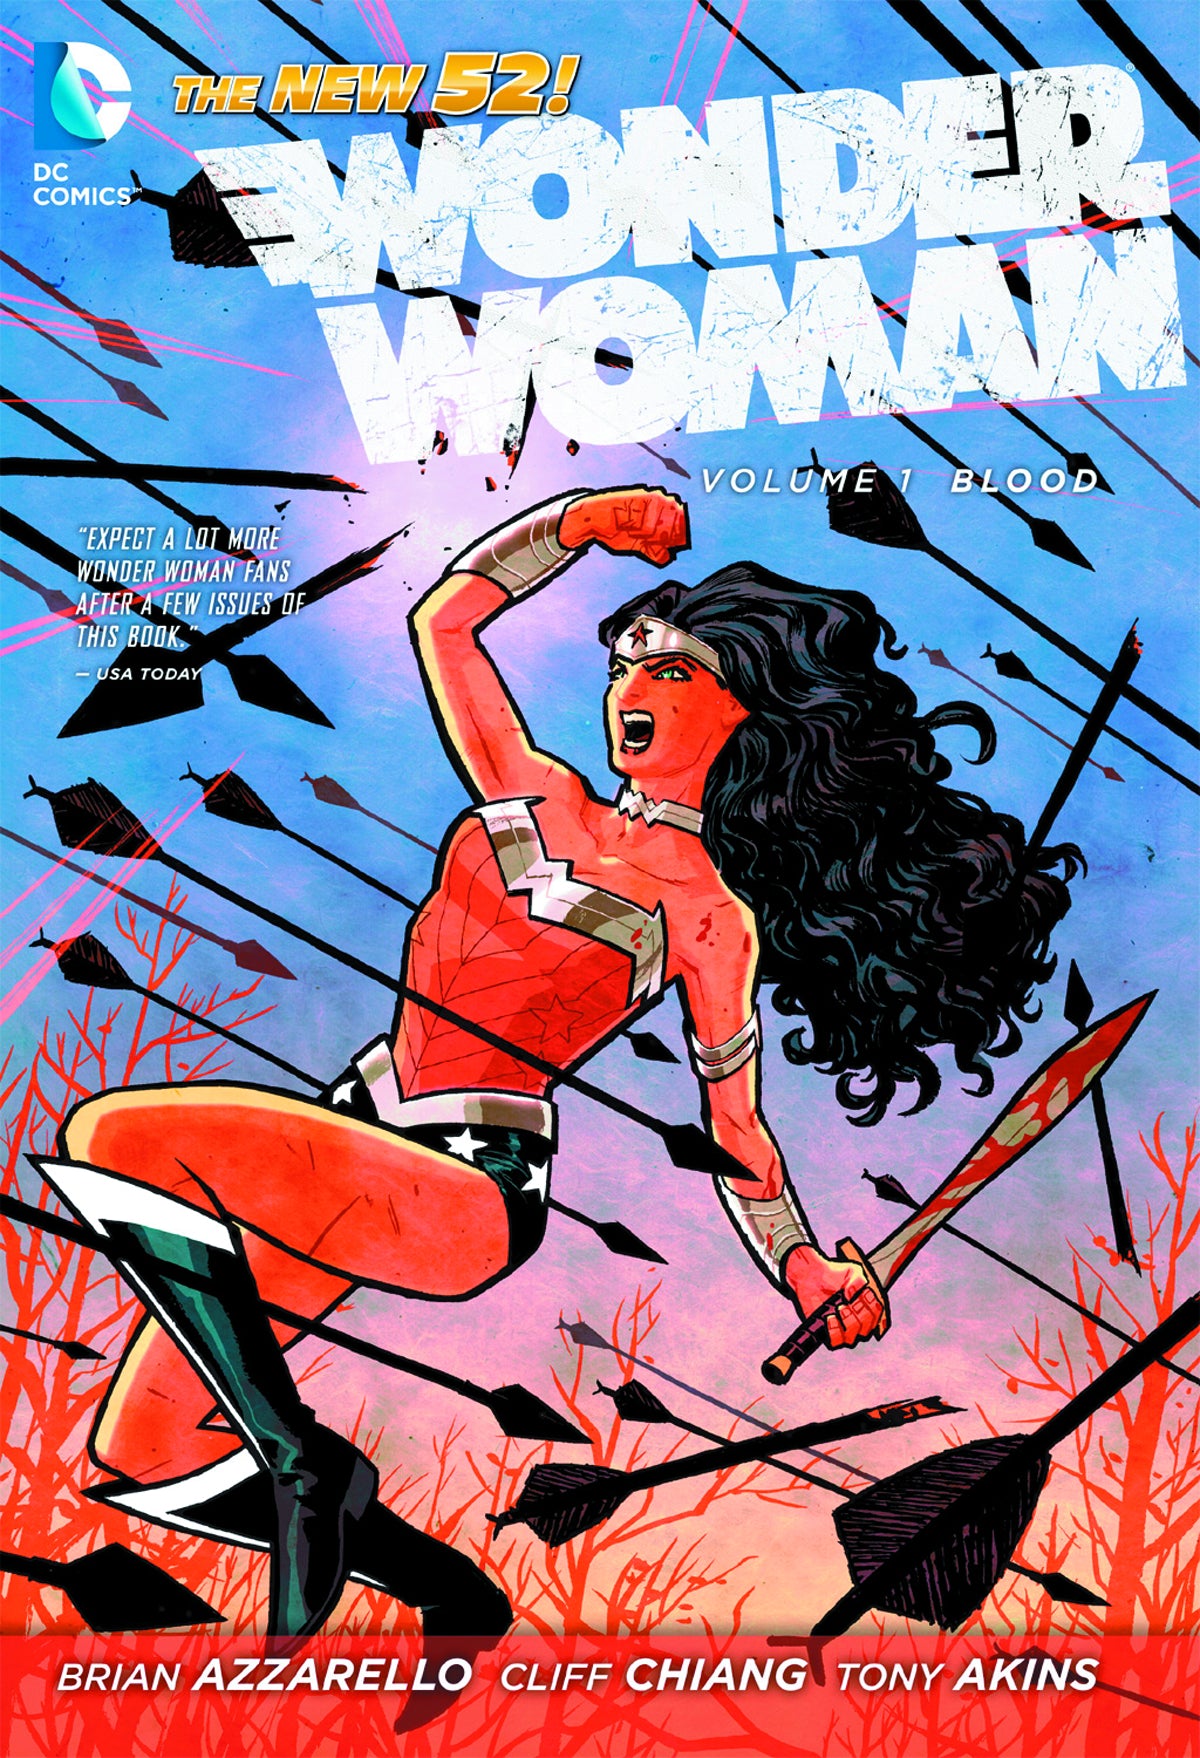 Wonder Woman Vol 01: Blood HC